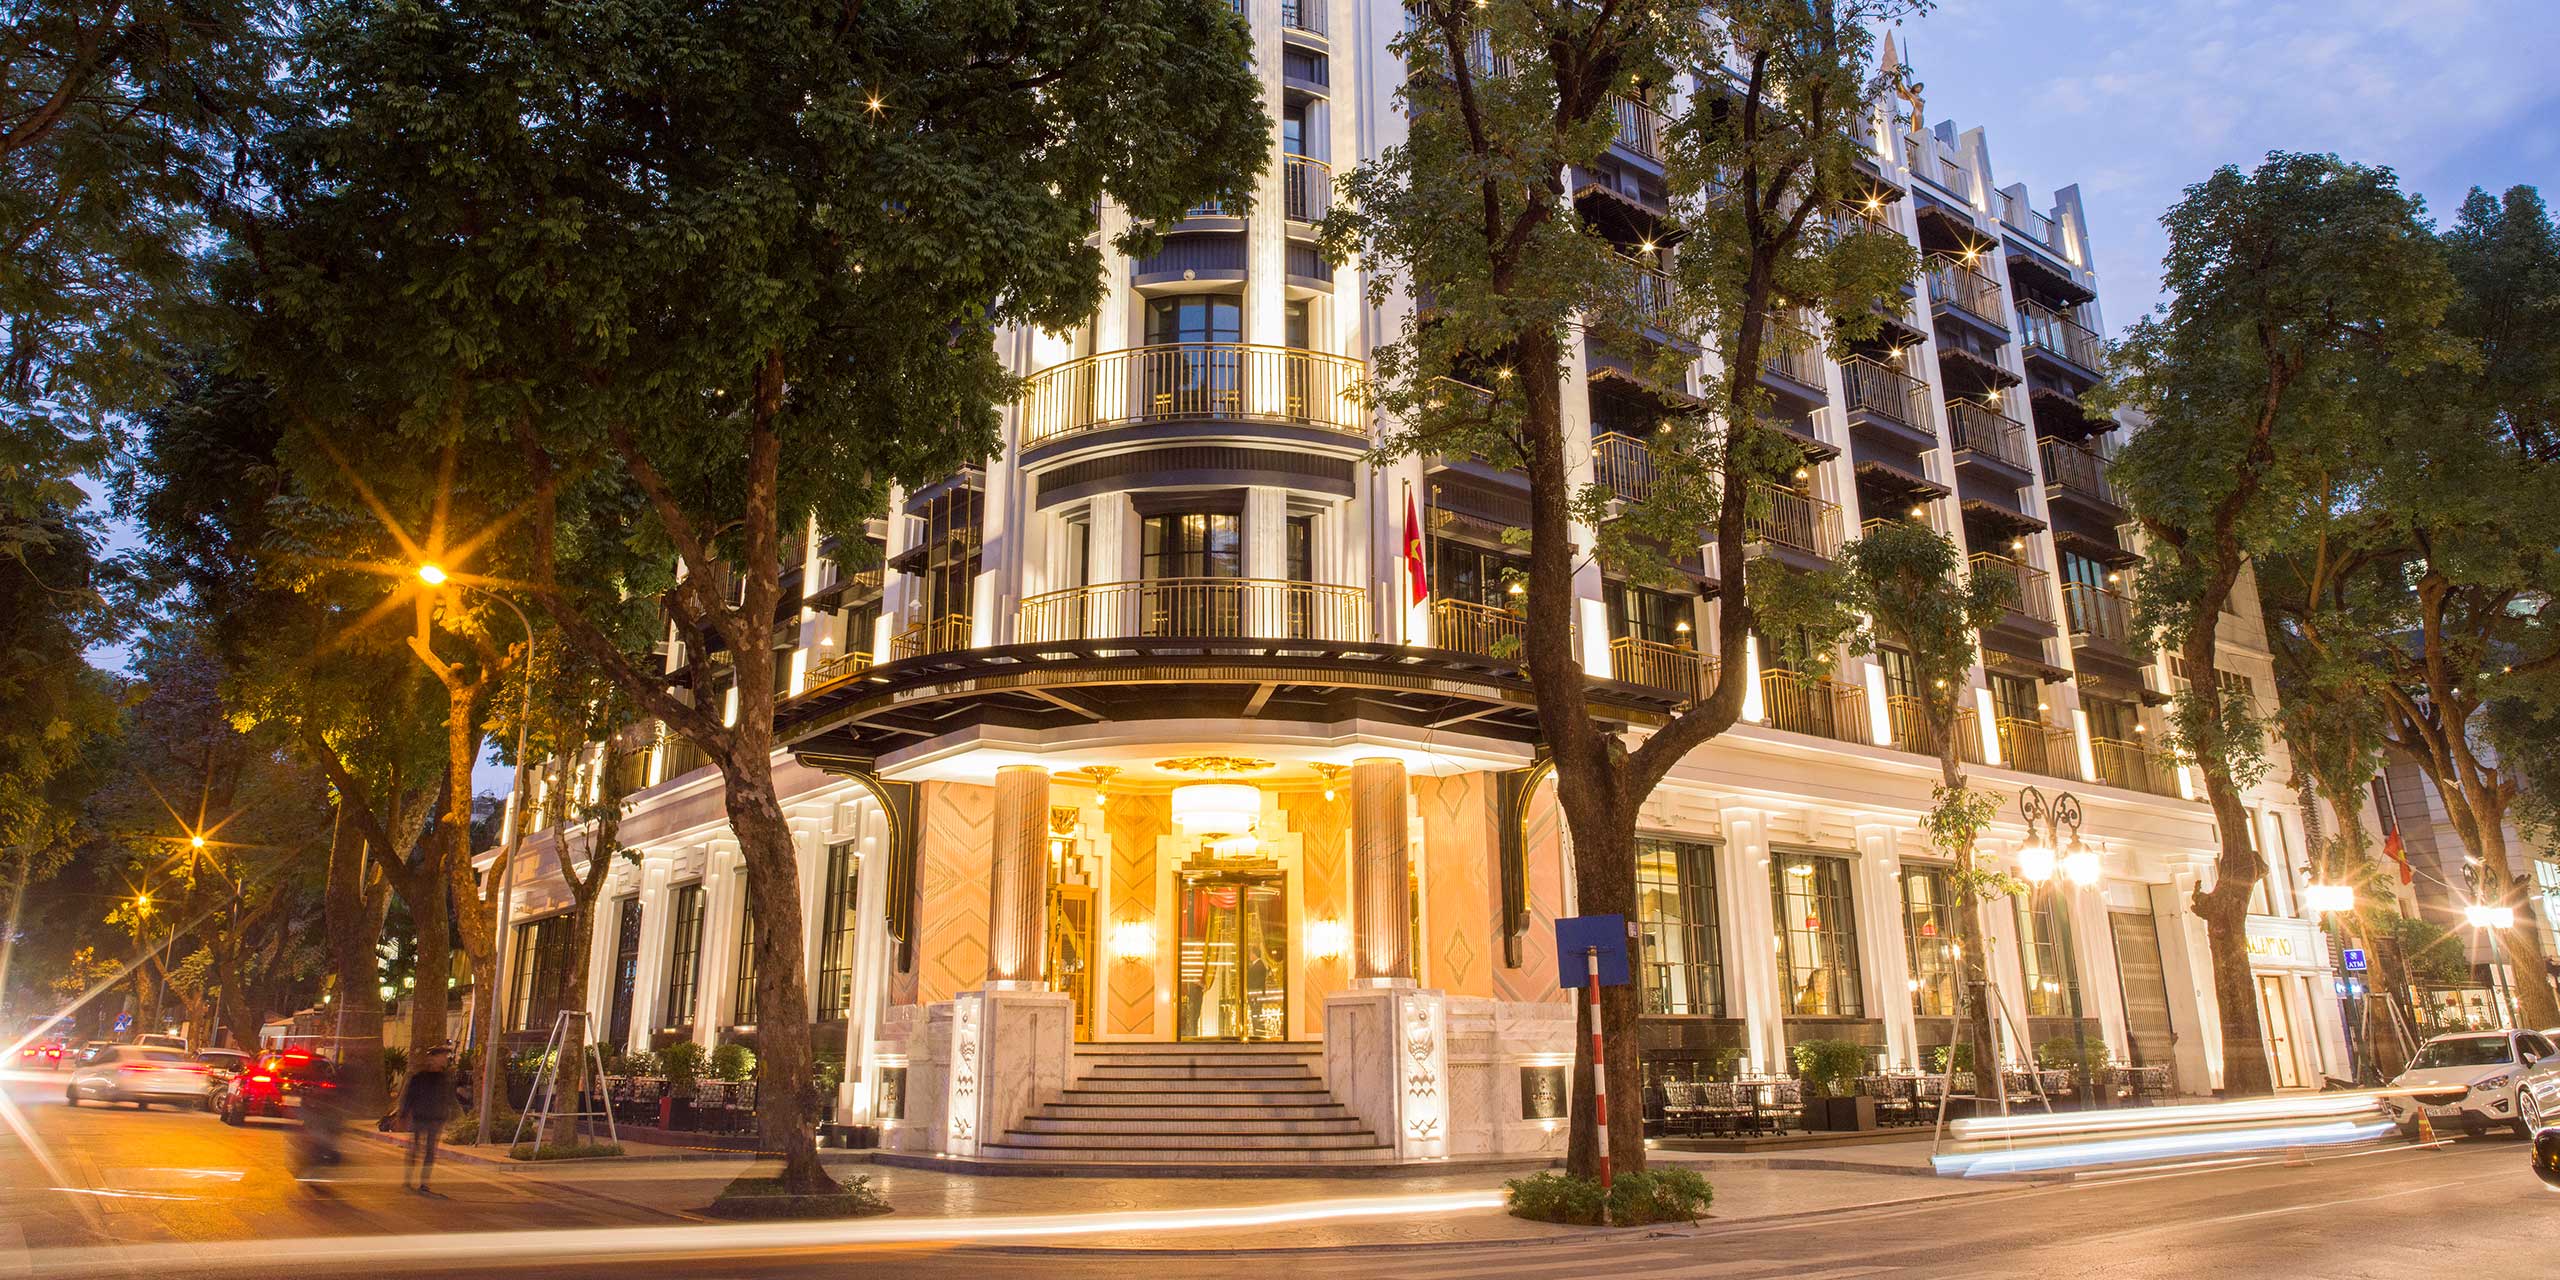 Отели в ханое. Отель Ханой. Capella Hanoi, Vietnam. Capella Hotel. Самый дорогой отель в Ханое.